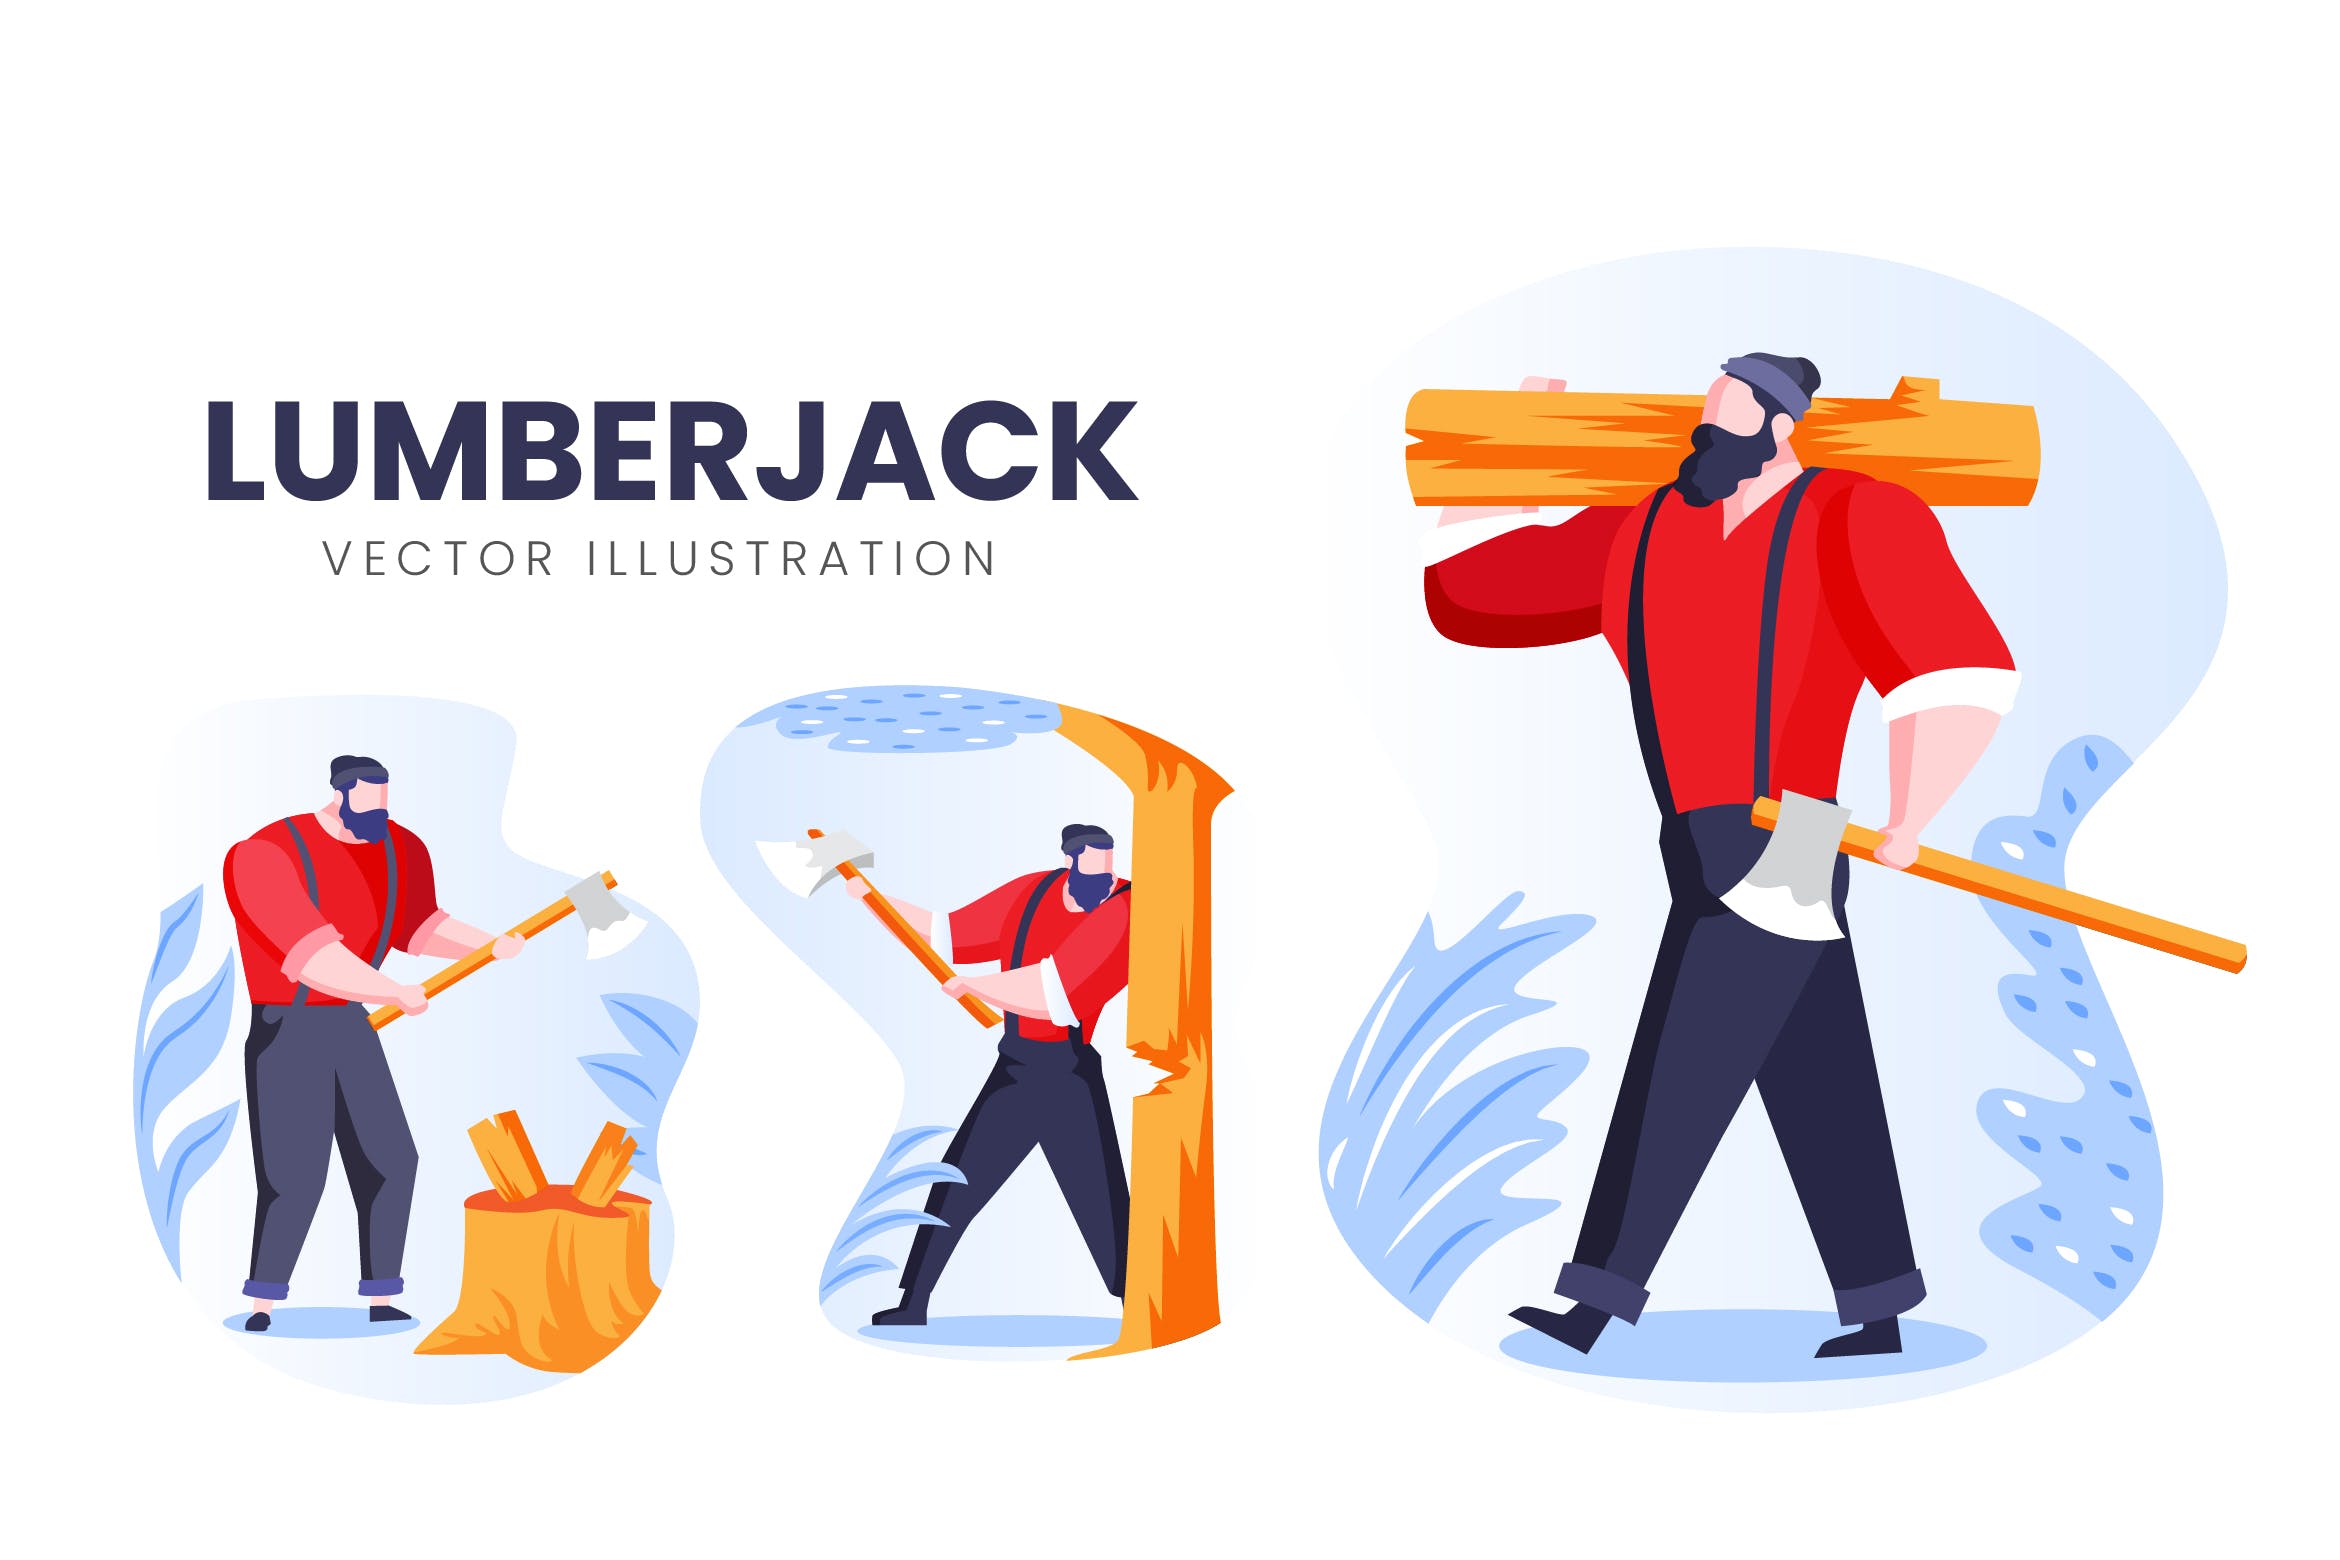 伐木工人物形象素材中国精选手绘插画矢量素材 Lumberjack Vector Character Set插图